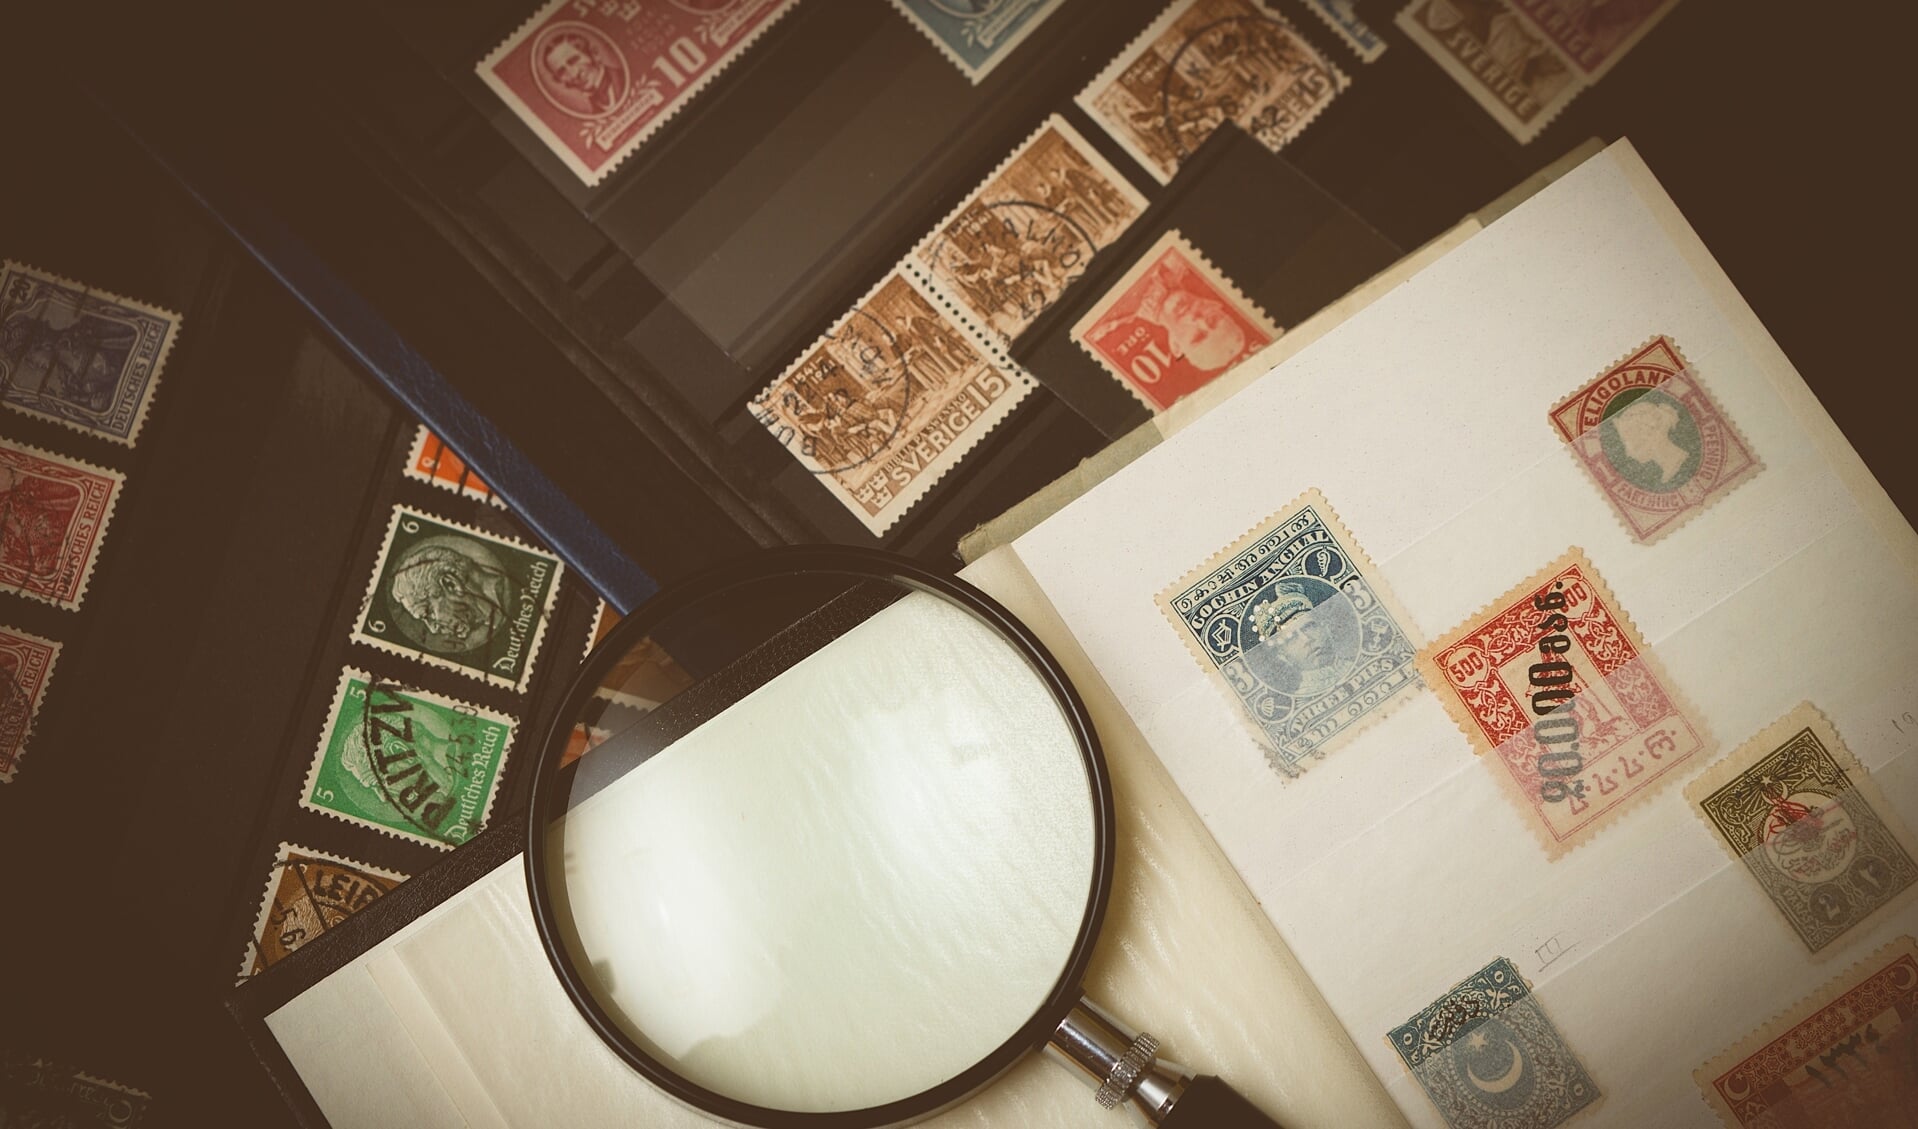 Zaterdag 2 oktober verzamelaarsbeurs: kom langs met je postzegels, munten, sigarenbandjes... 